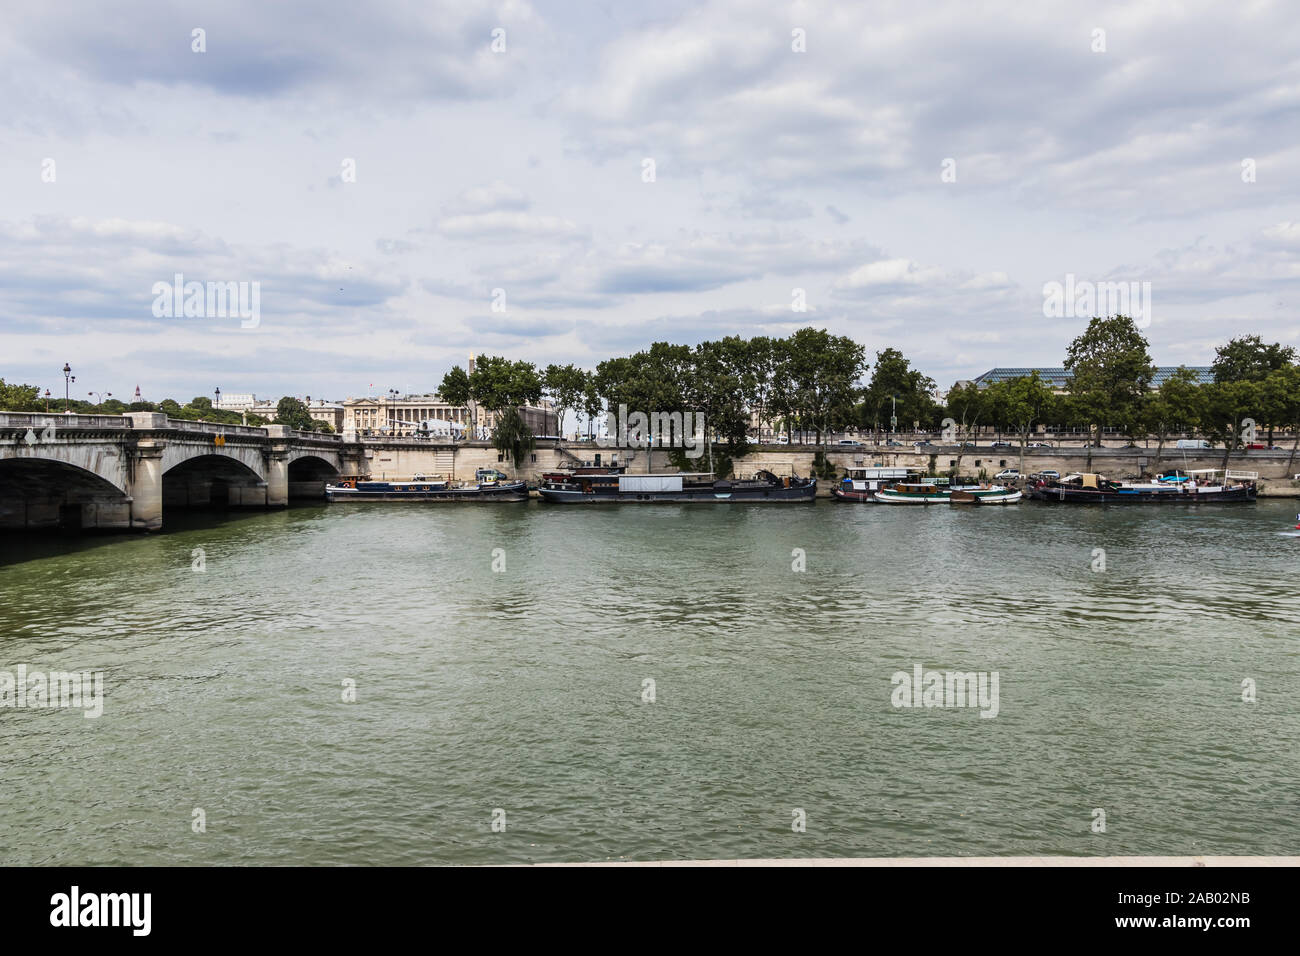 Pont de la Concorde and houseboats on the Seine River, Paris Stock Photo